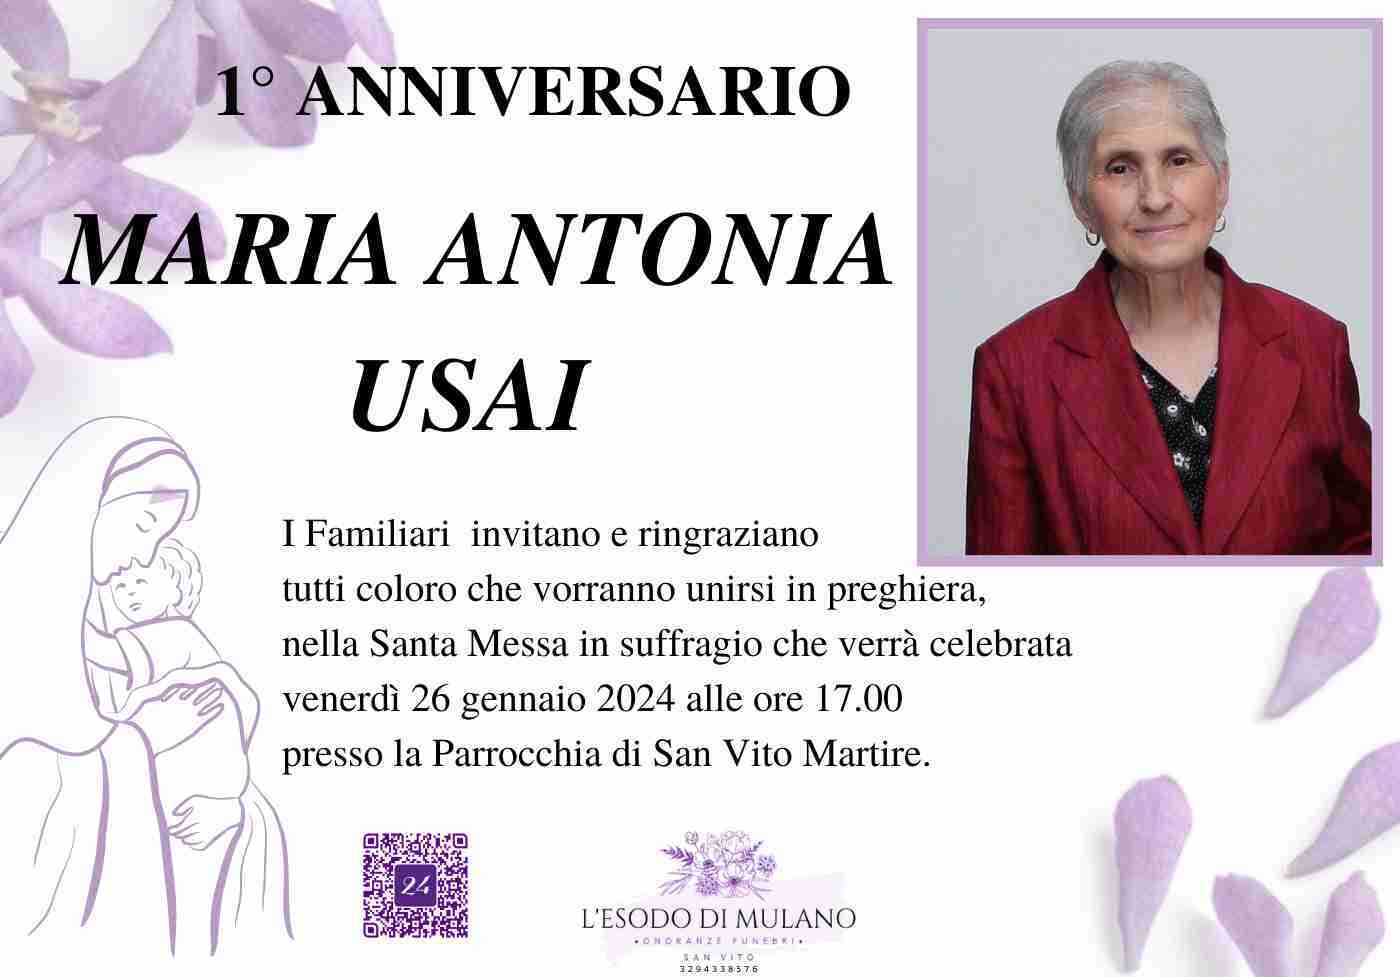 Maria Antonia Usai